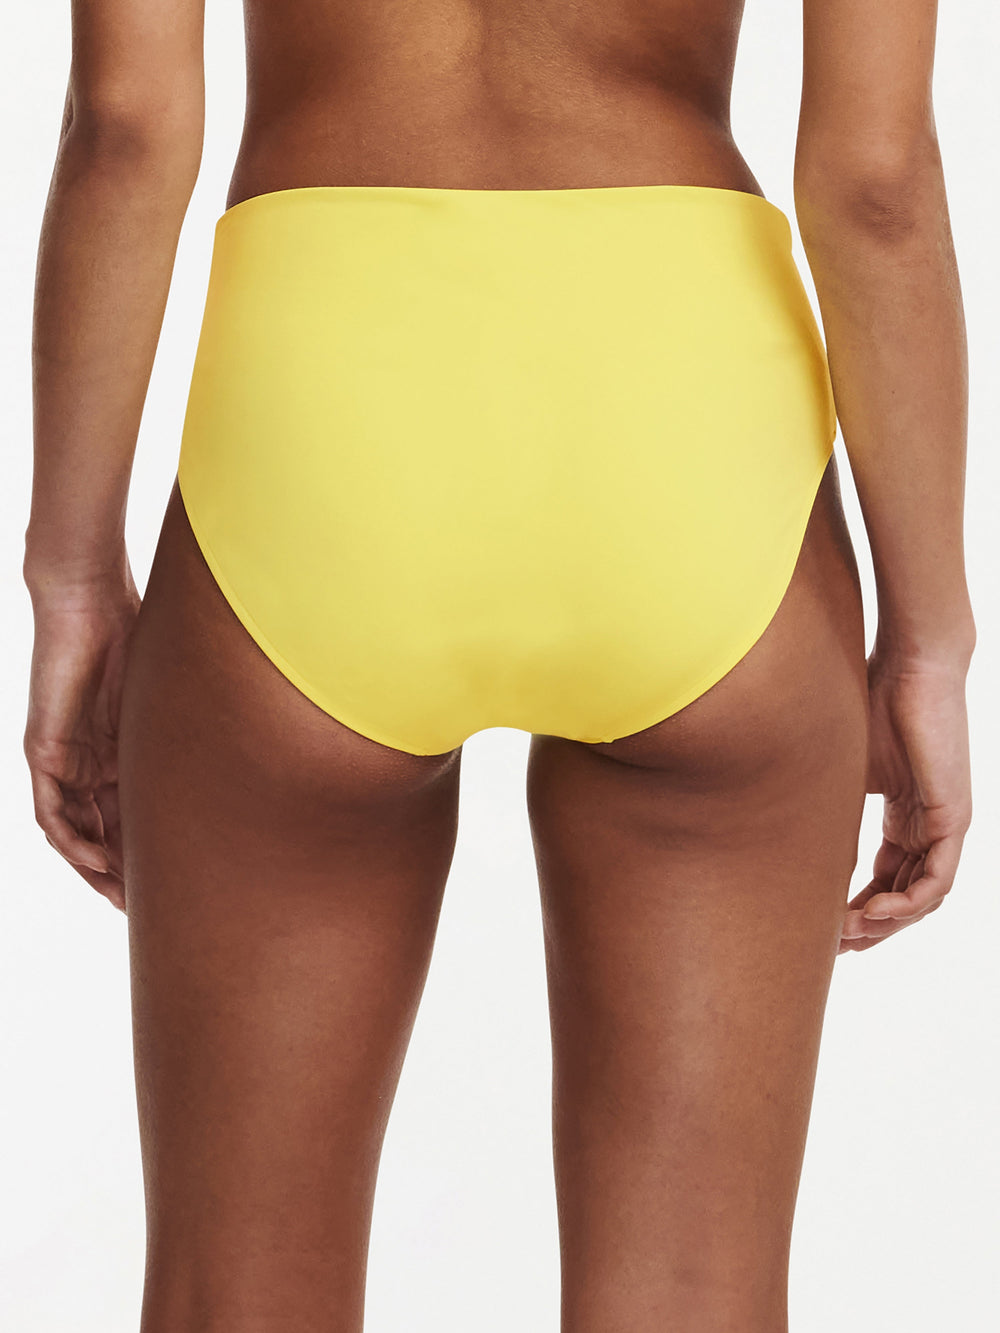 Chantelle Swimwear Inspire Full Brief - Sonnenschein vollständiger Bikini-Slip Chantelle